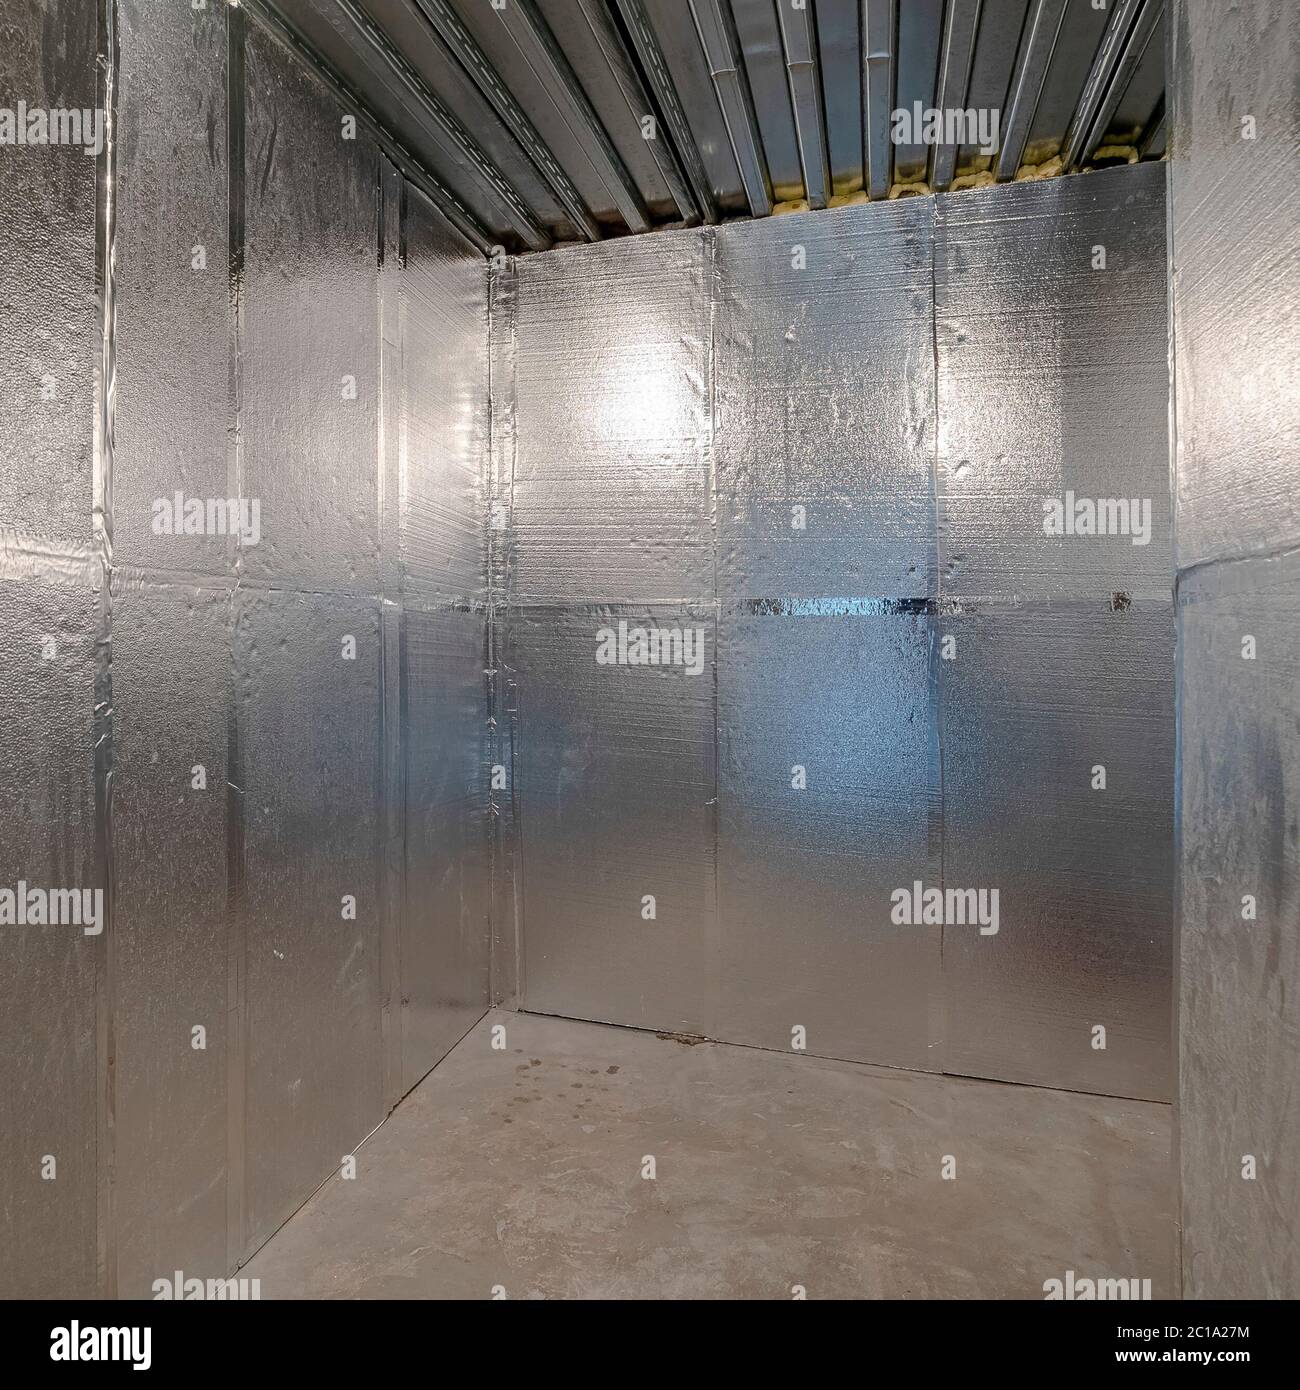 Chambre froide intérieure carrée dans une maison résidentielle Photo Stock  - Alamy